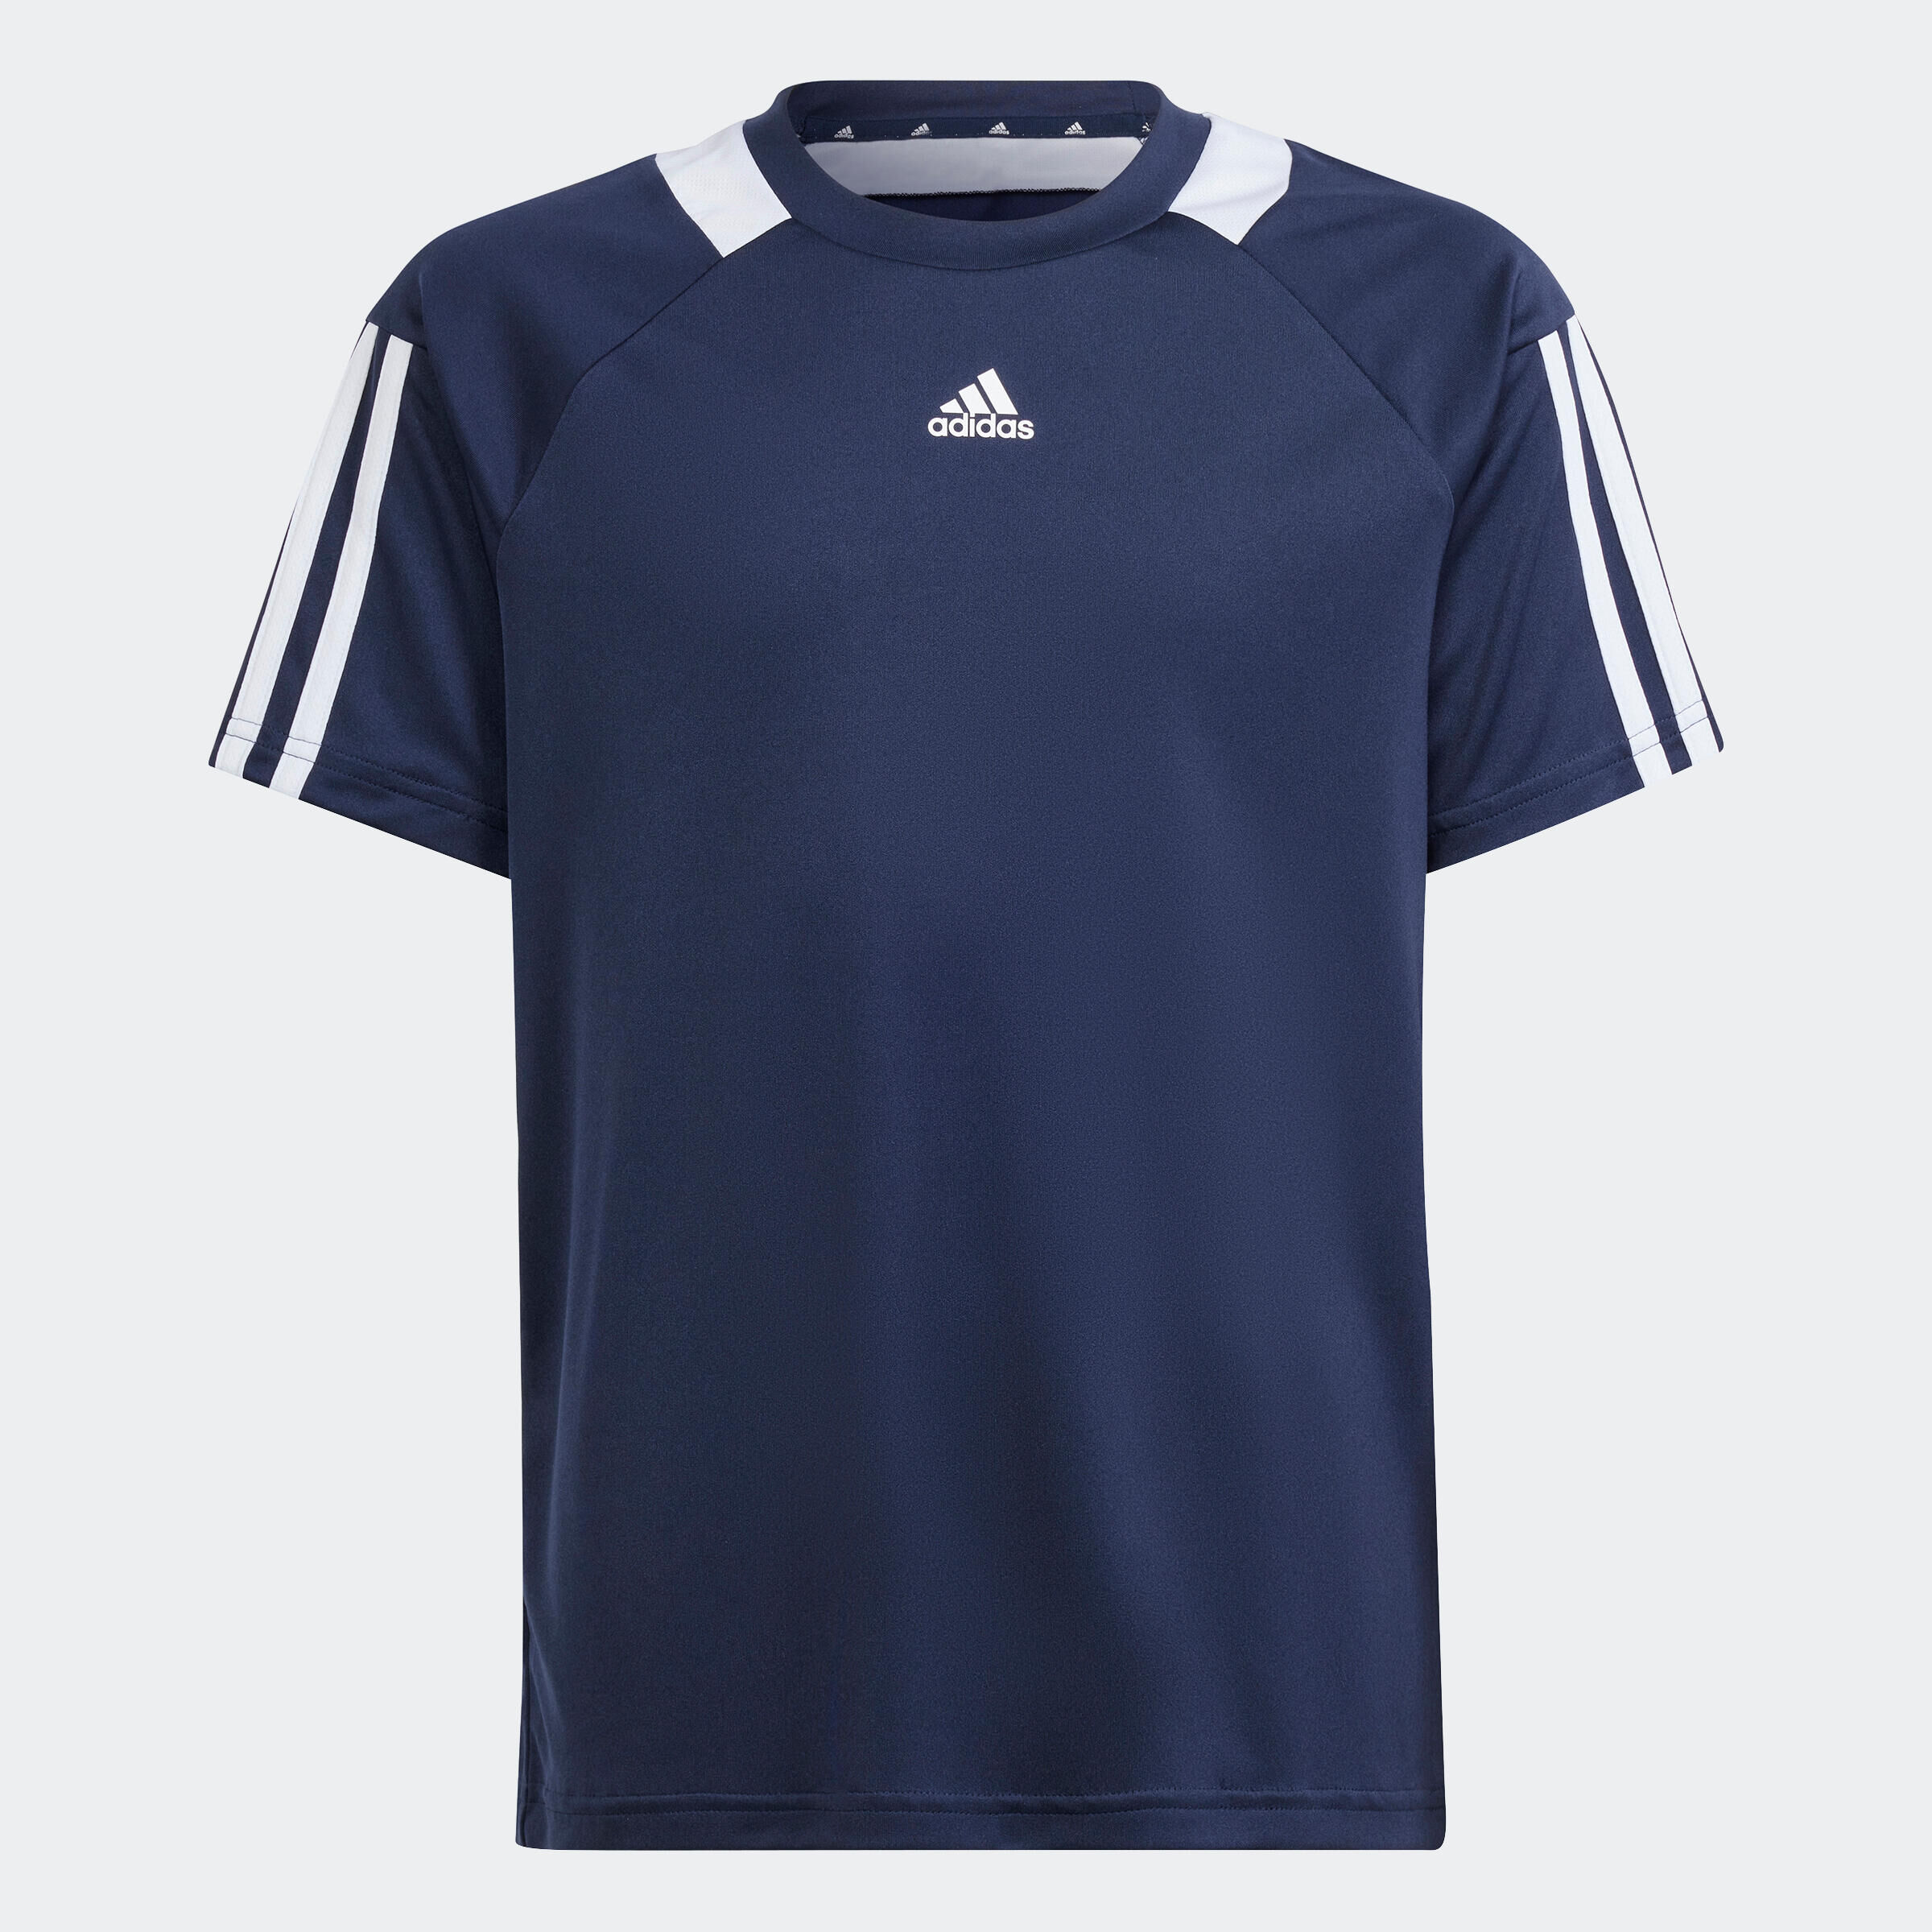 ADIDAS Kids' Football Shirt Sereno - Navy Blue